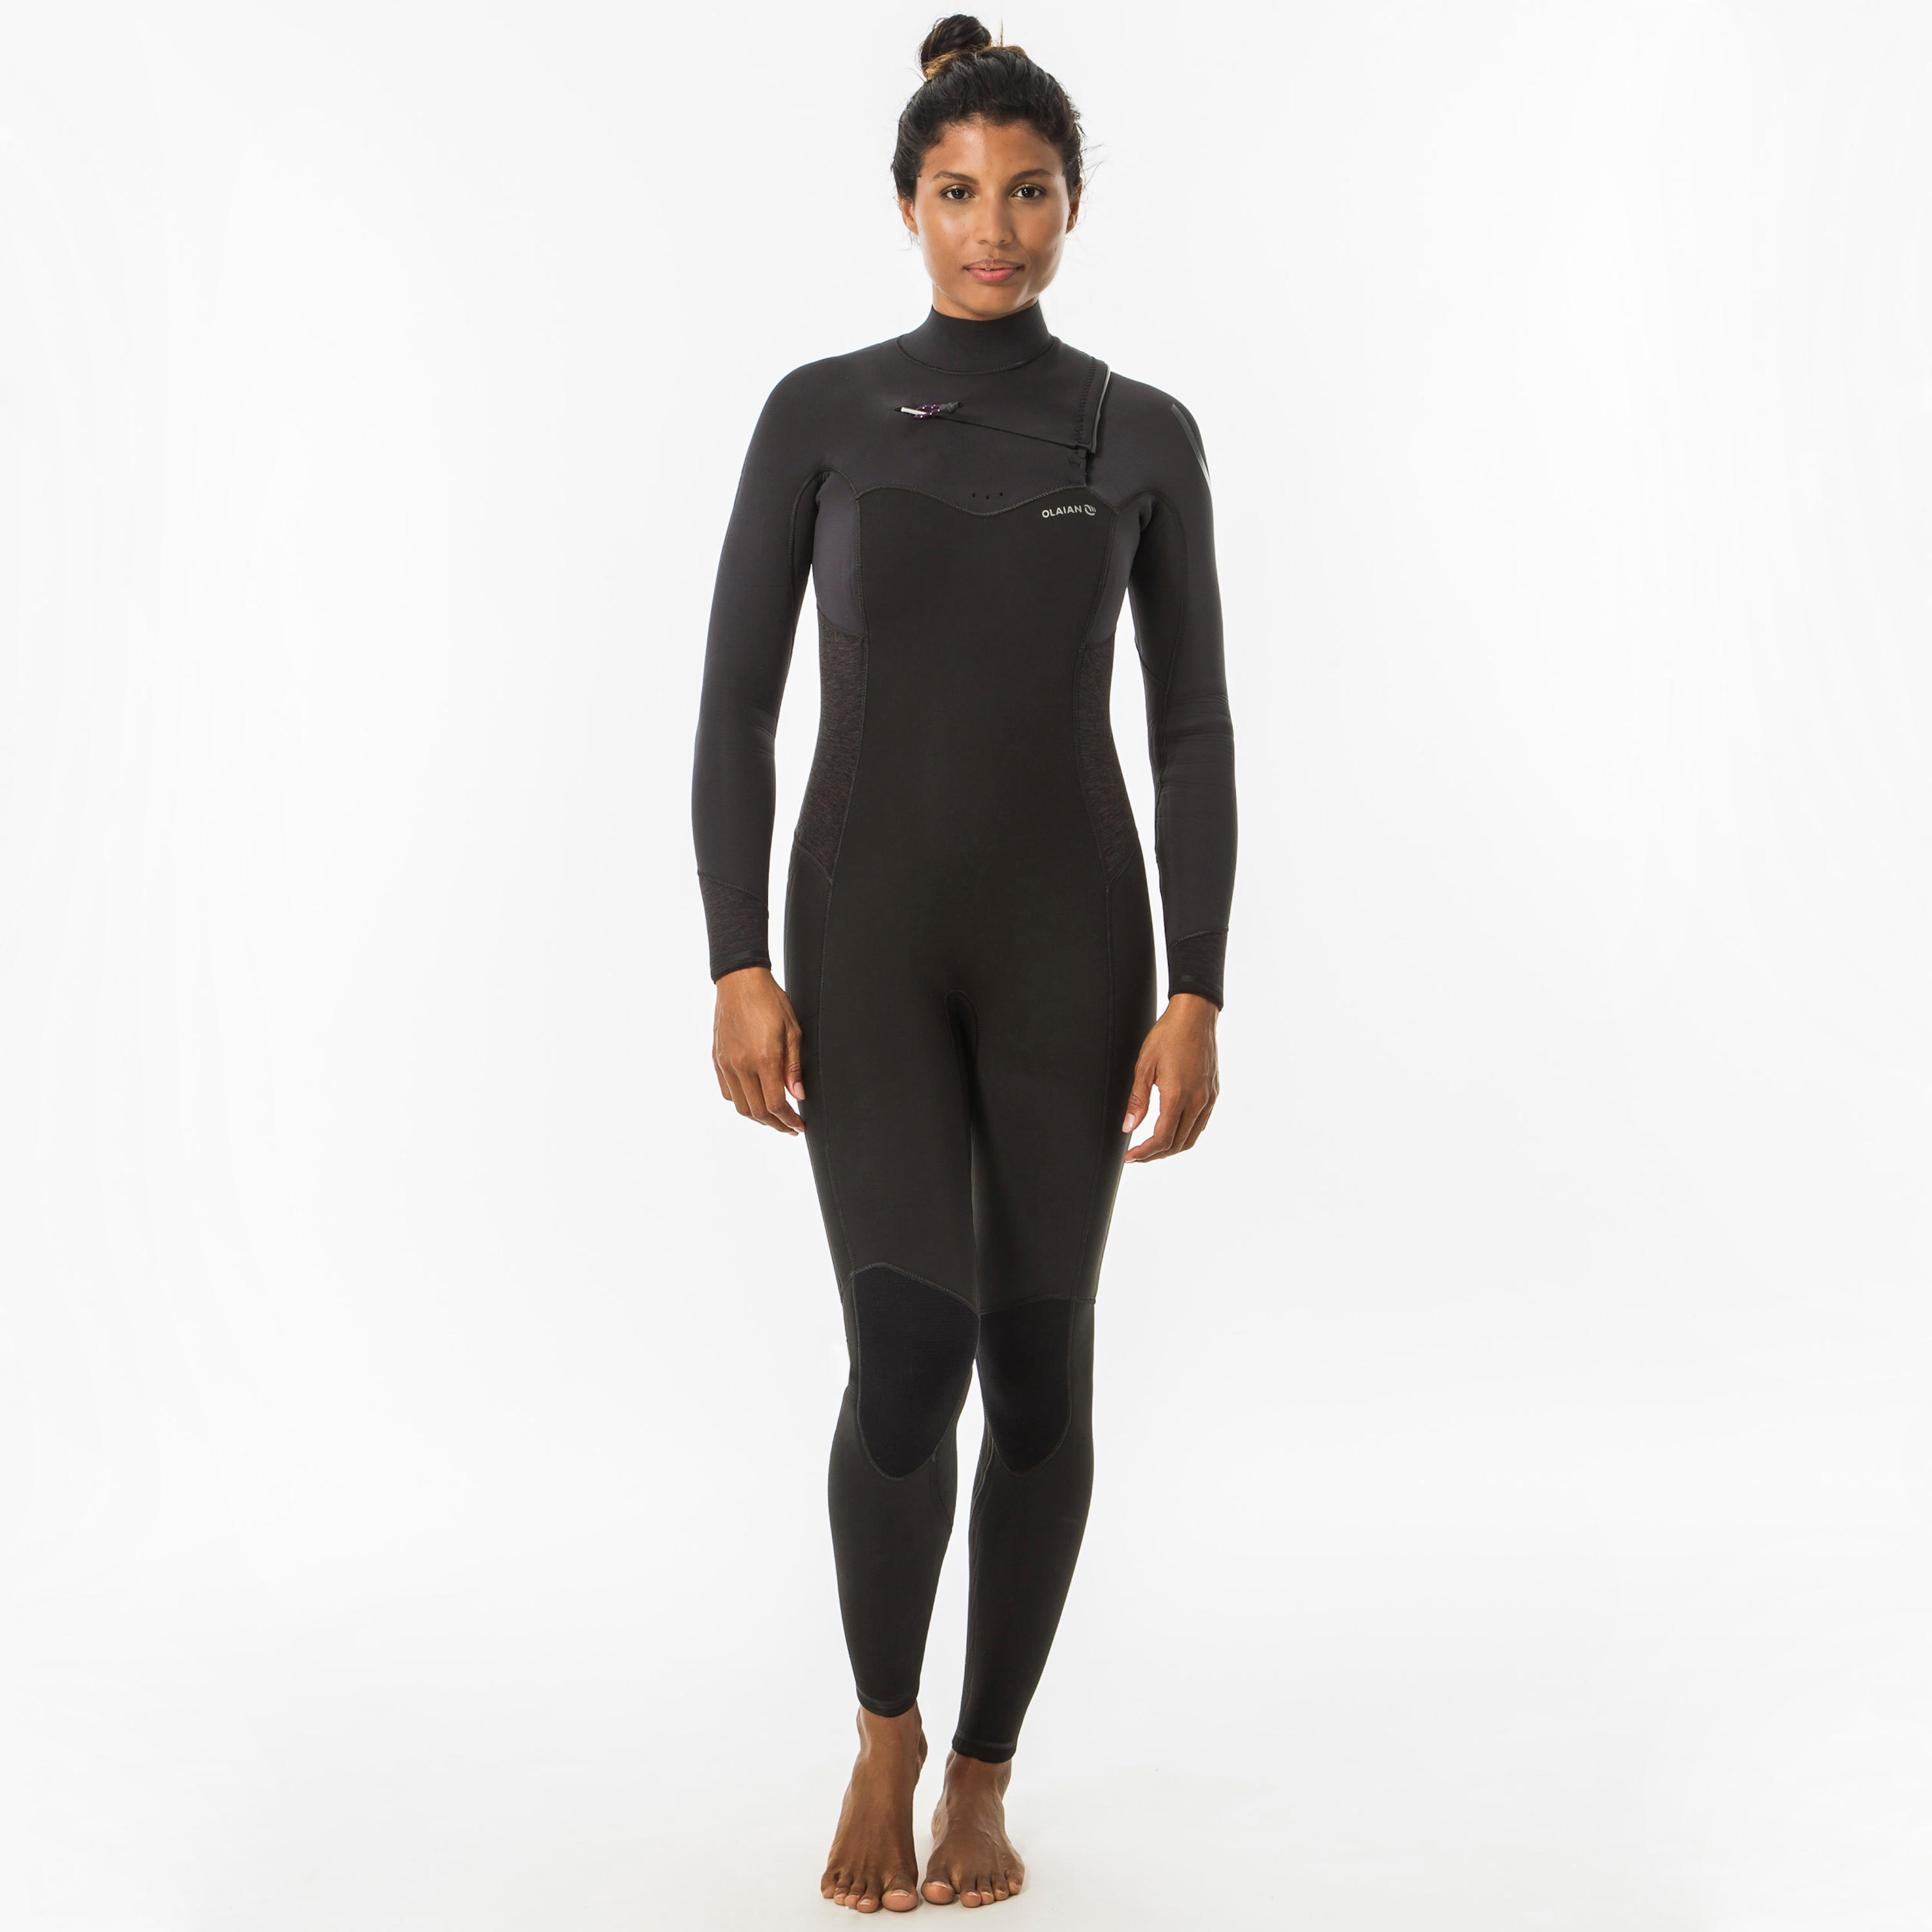 OLAIAN Neoprenanzug Surfen 900 4/3 mm Brustreißverschluss Damen schwarz/grau XS